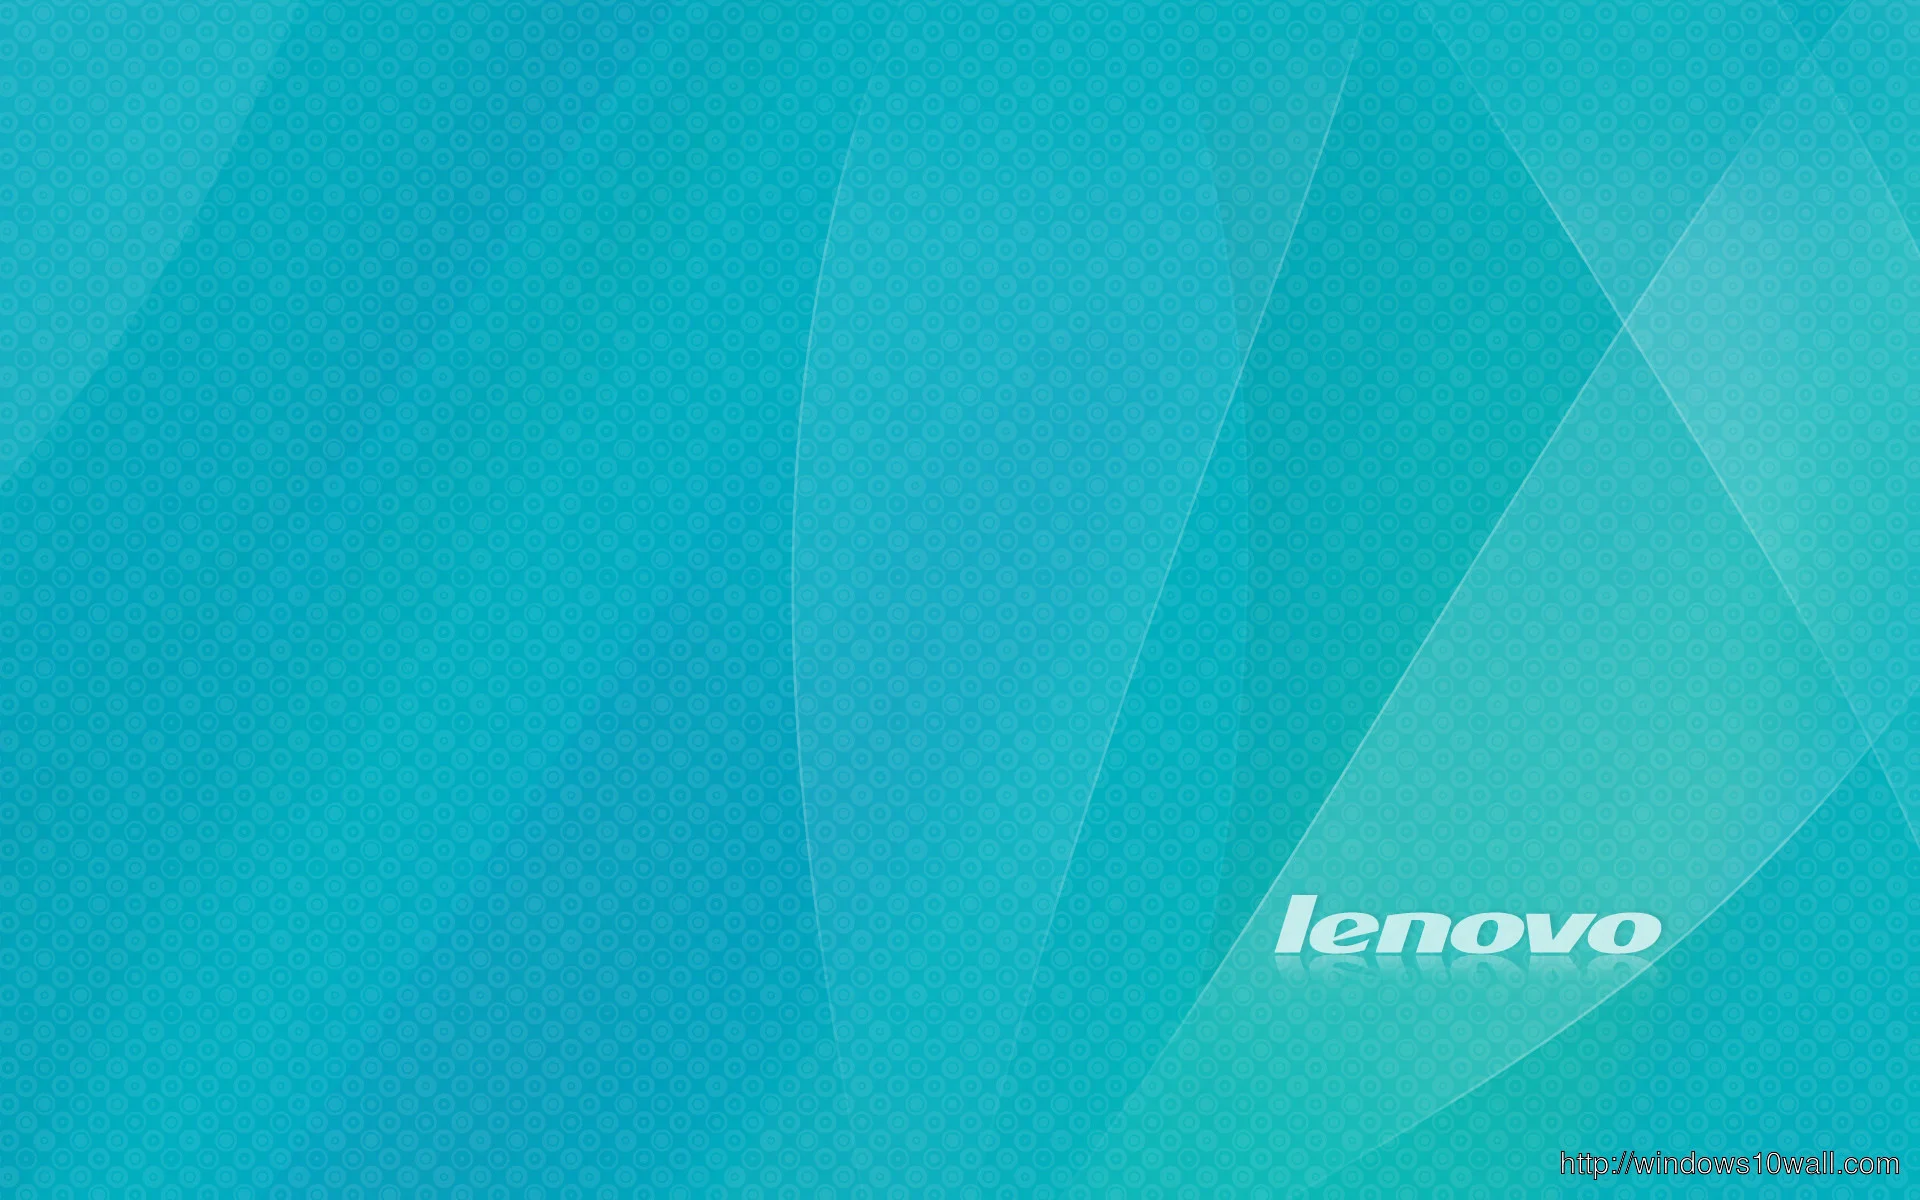 0 Lenovo 4K Wallpaper | WallpaperSafari Lenovo Background Wallpapers